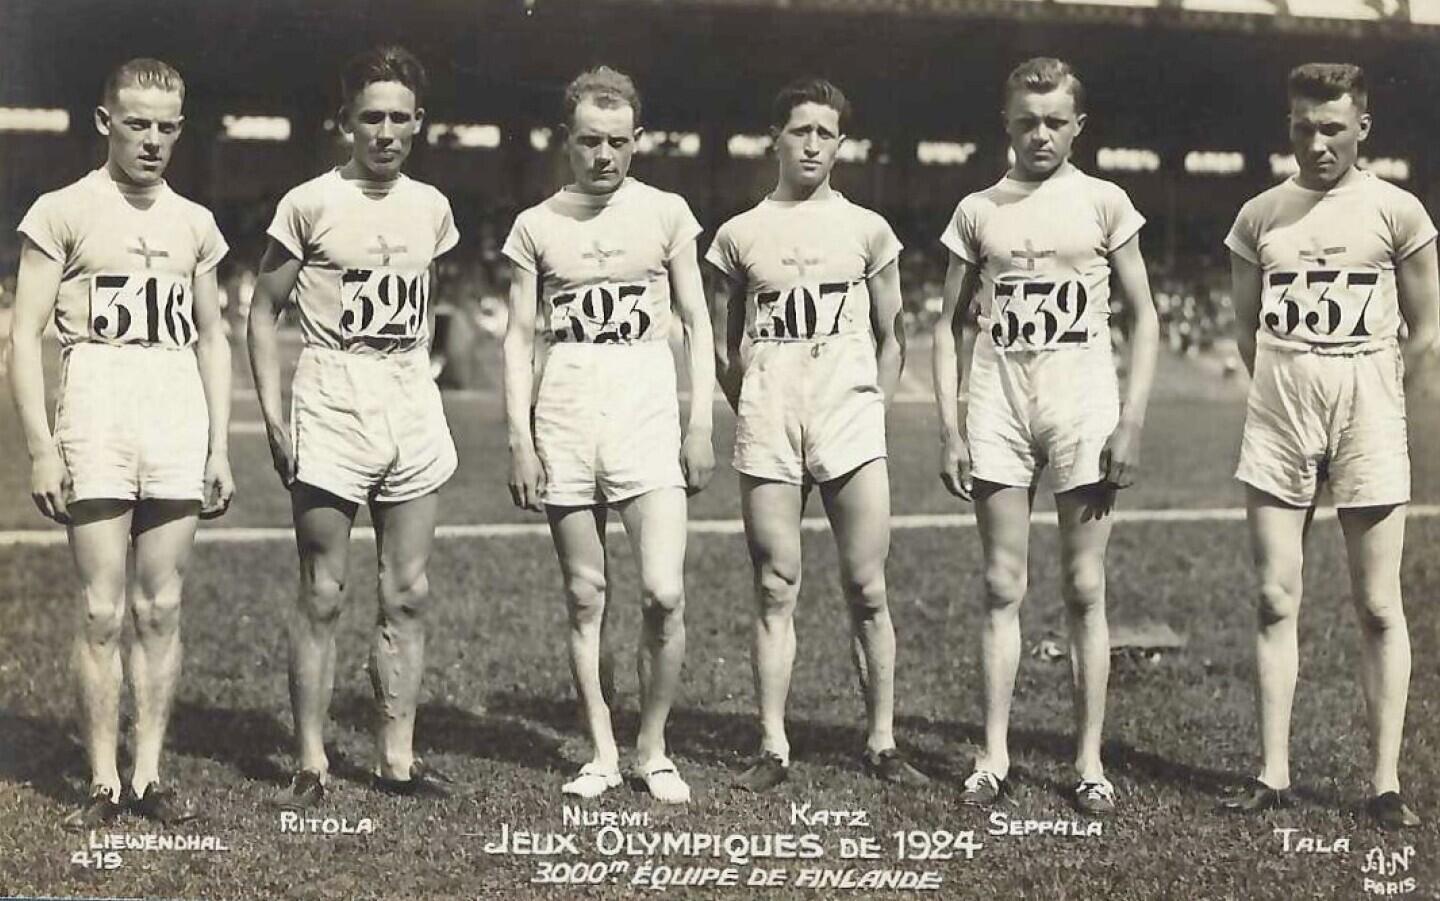 Miembros del equipo finlandés de atletismo en los Juegos Olímpicos de 1924, incluidos Ville Ritola y Paavo Nurmi.